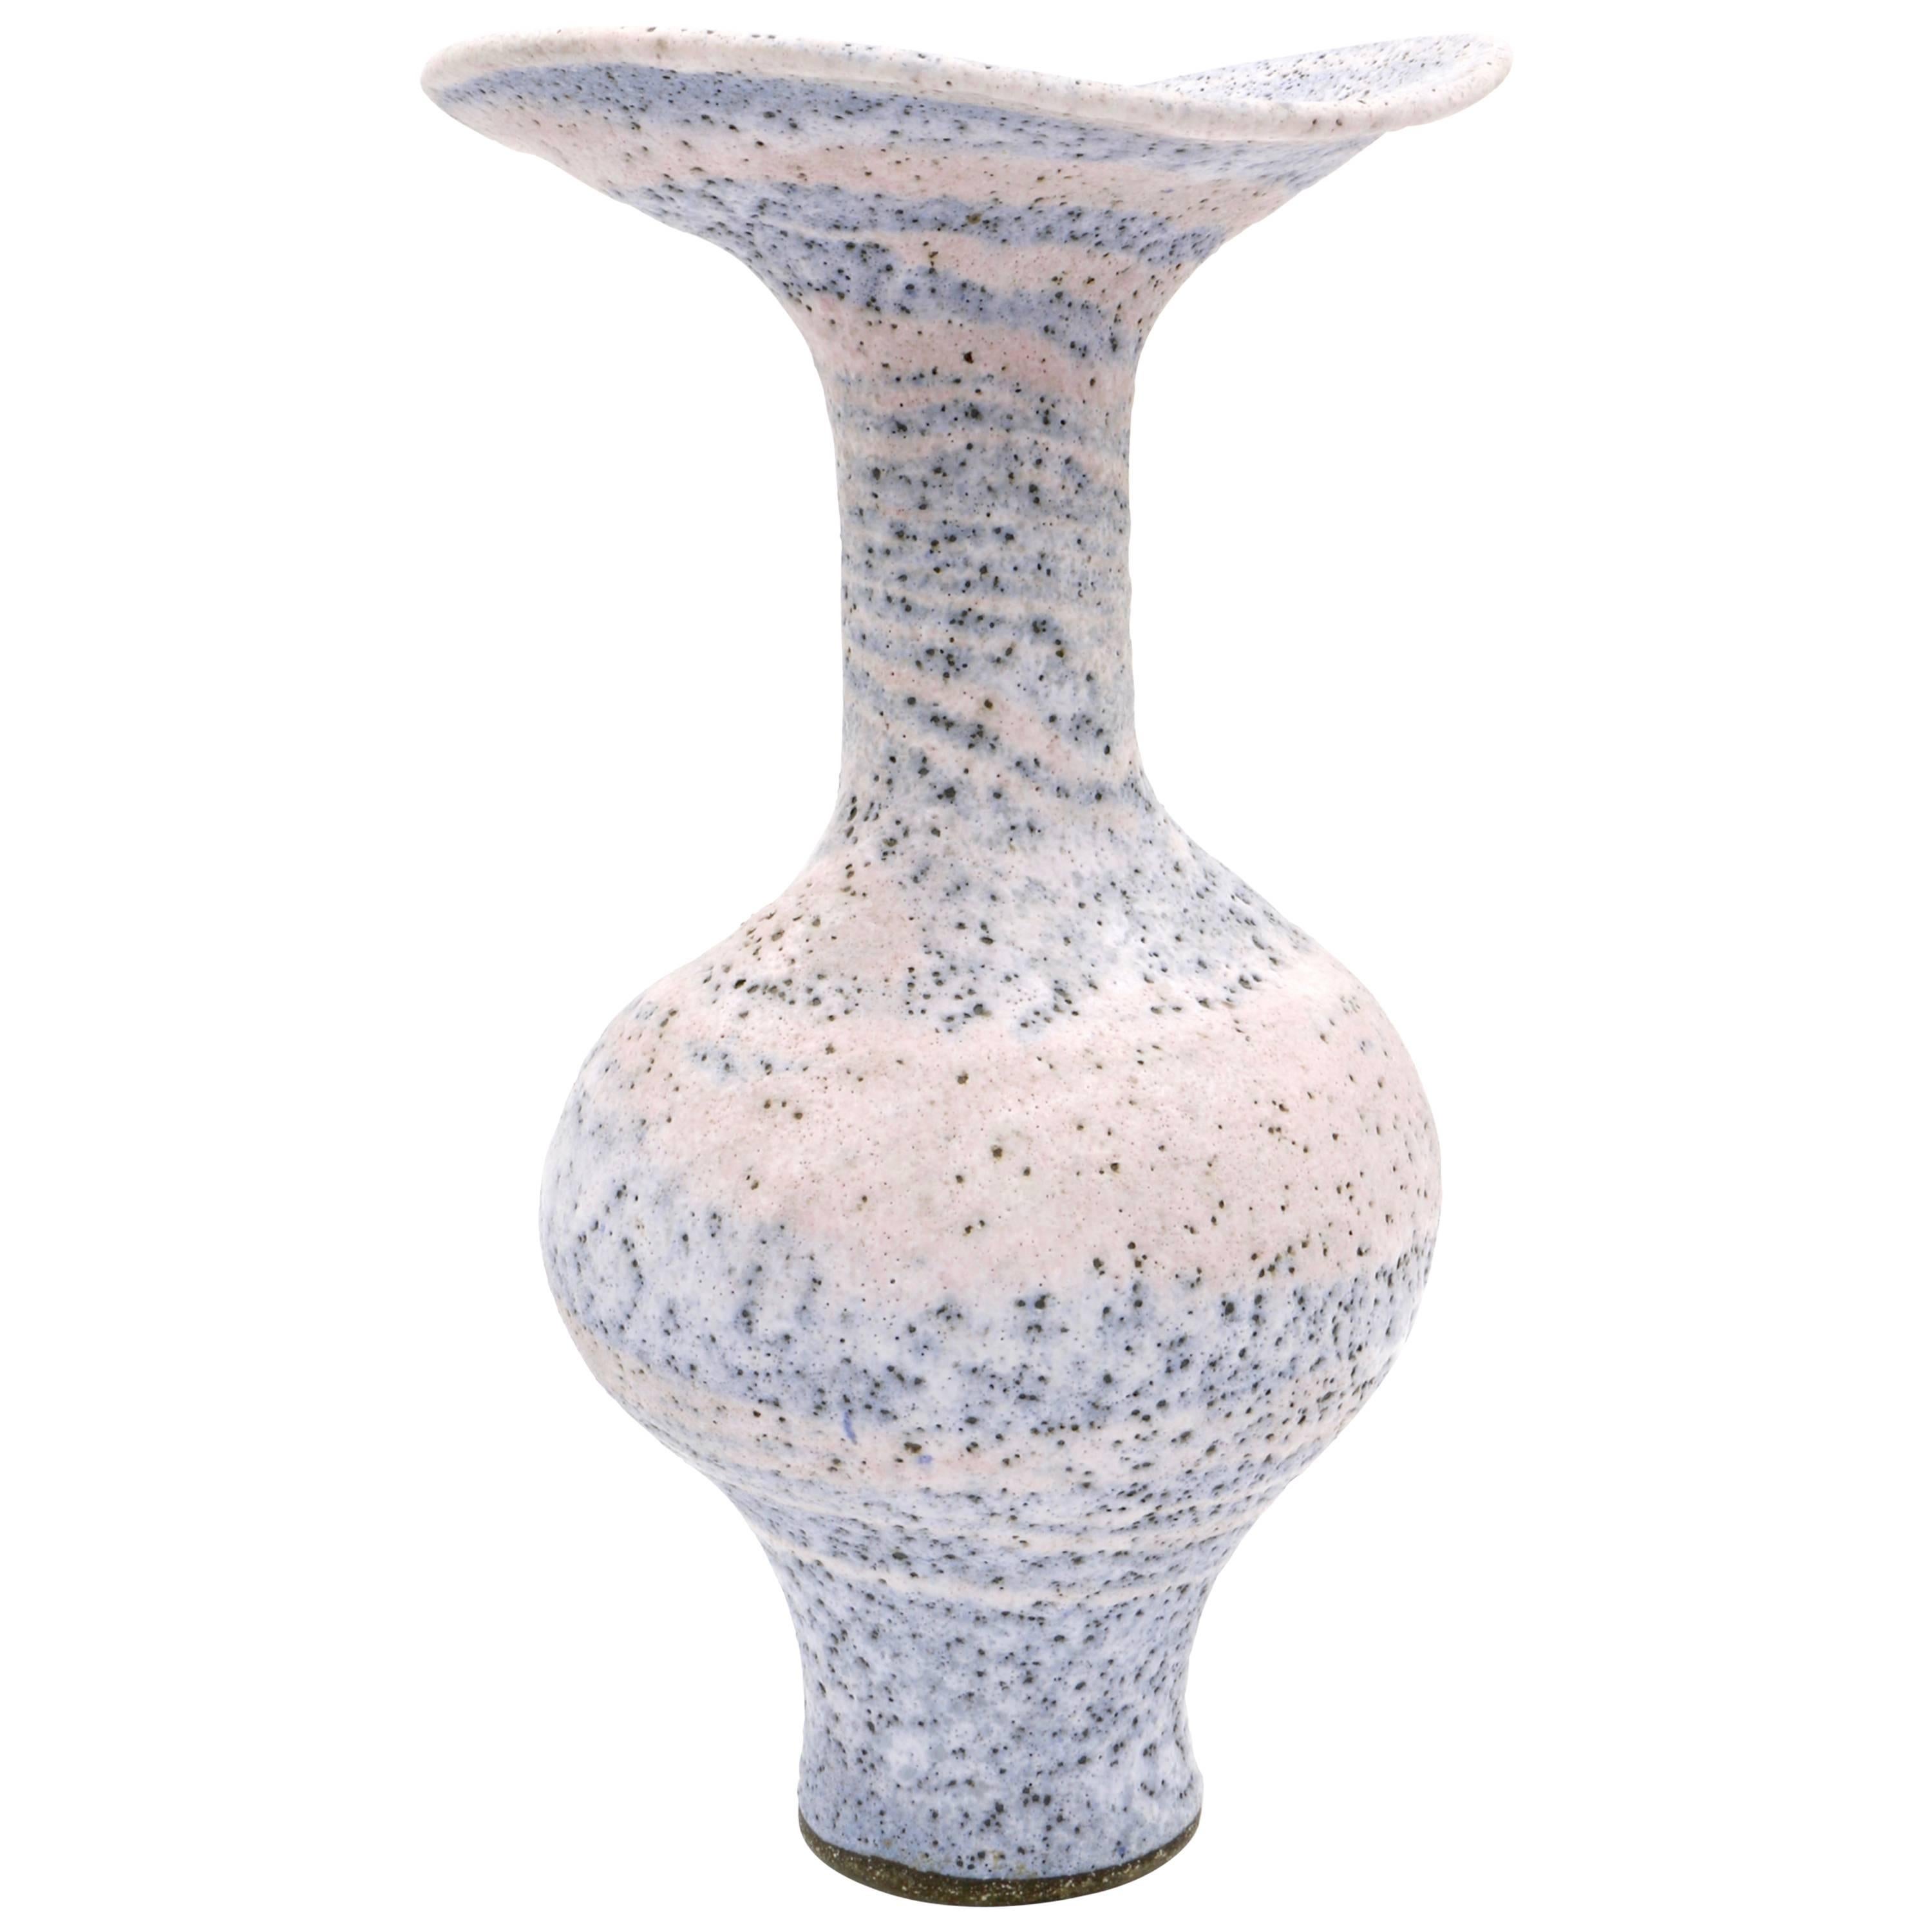 Lucie Rie Elegant Tall Trumpet Vase, Spiral Design For Sale